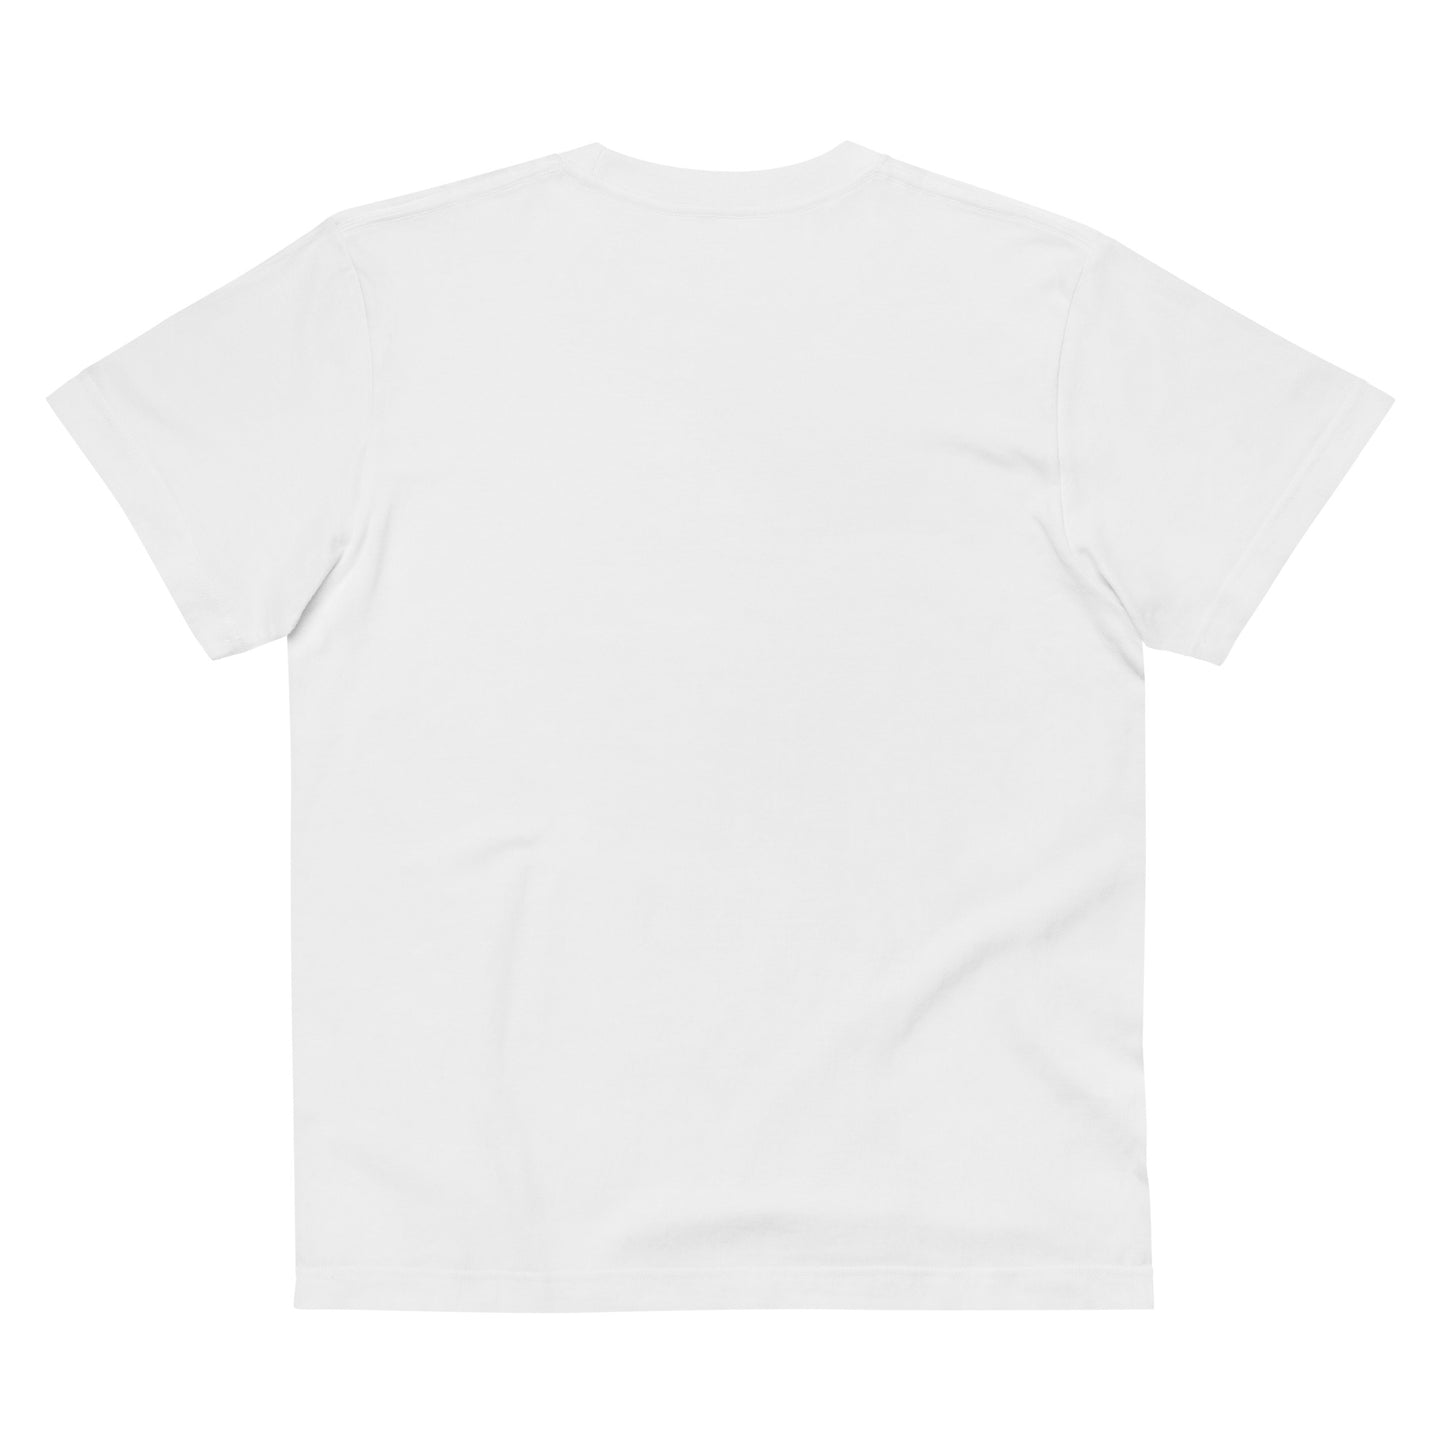 E016 - Tシャツ/レギュラーフィット (ユニバーサルジャンプ : ホワイト/ブラック)